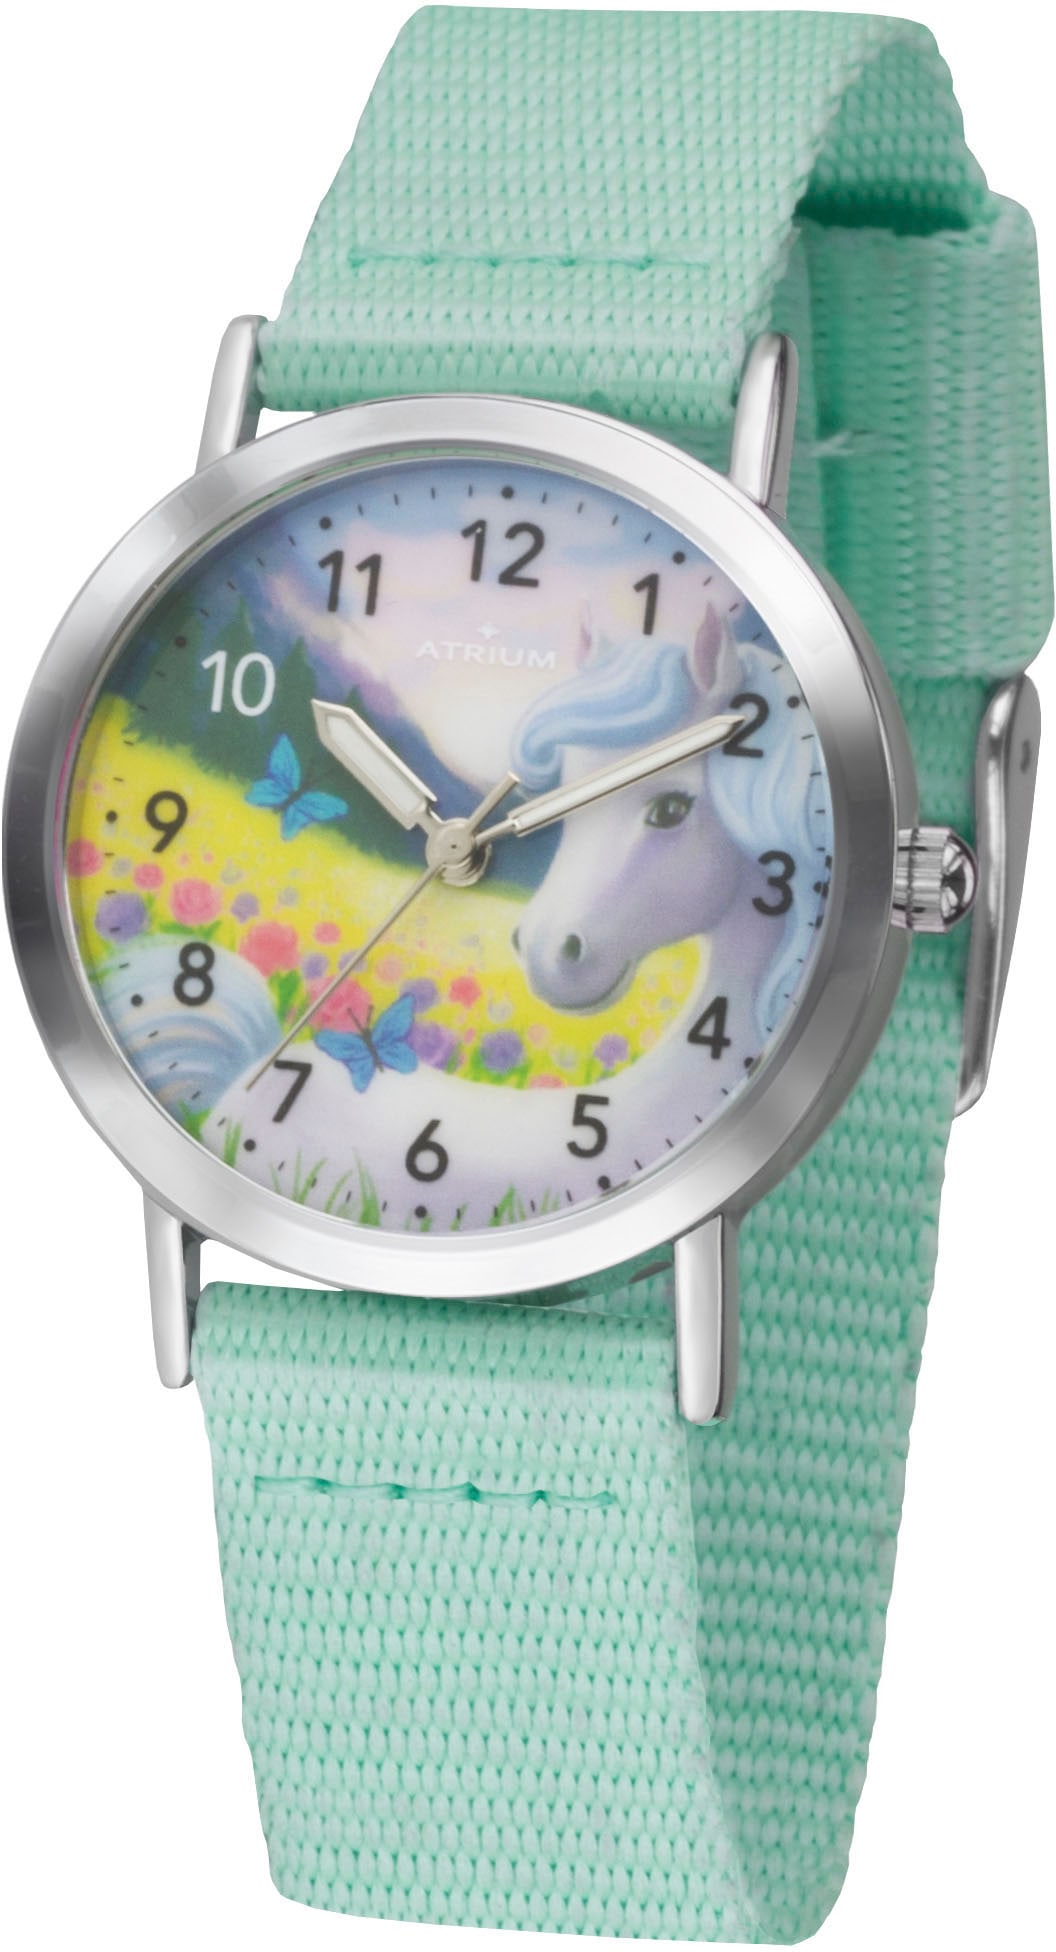 Quarzuhr »A44-13«, Armbanduhr, Kinderuhr, Mädchenenuhr, ideal auch als Geschenk